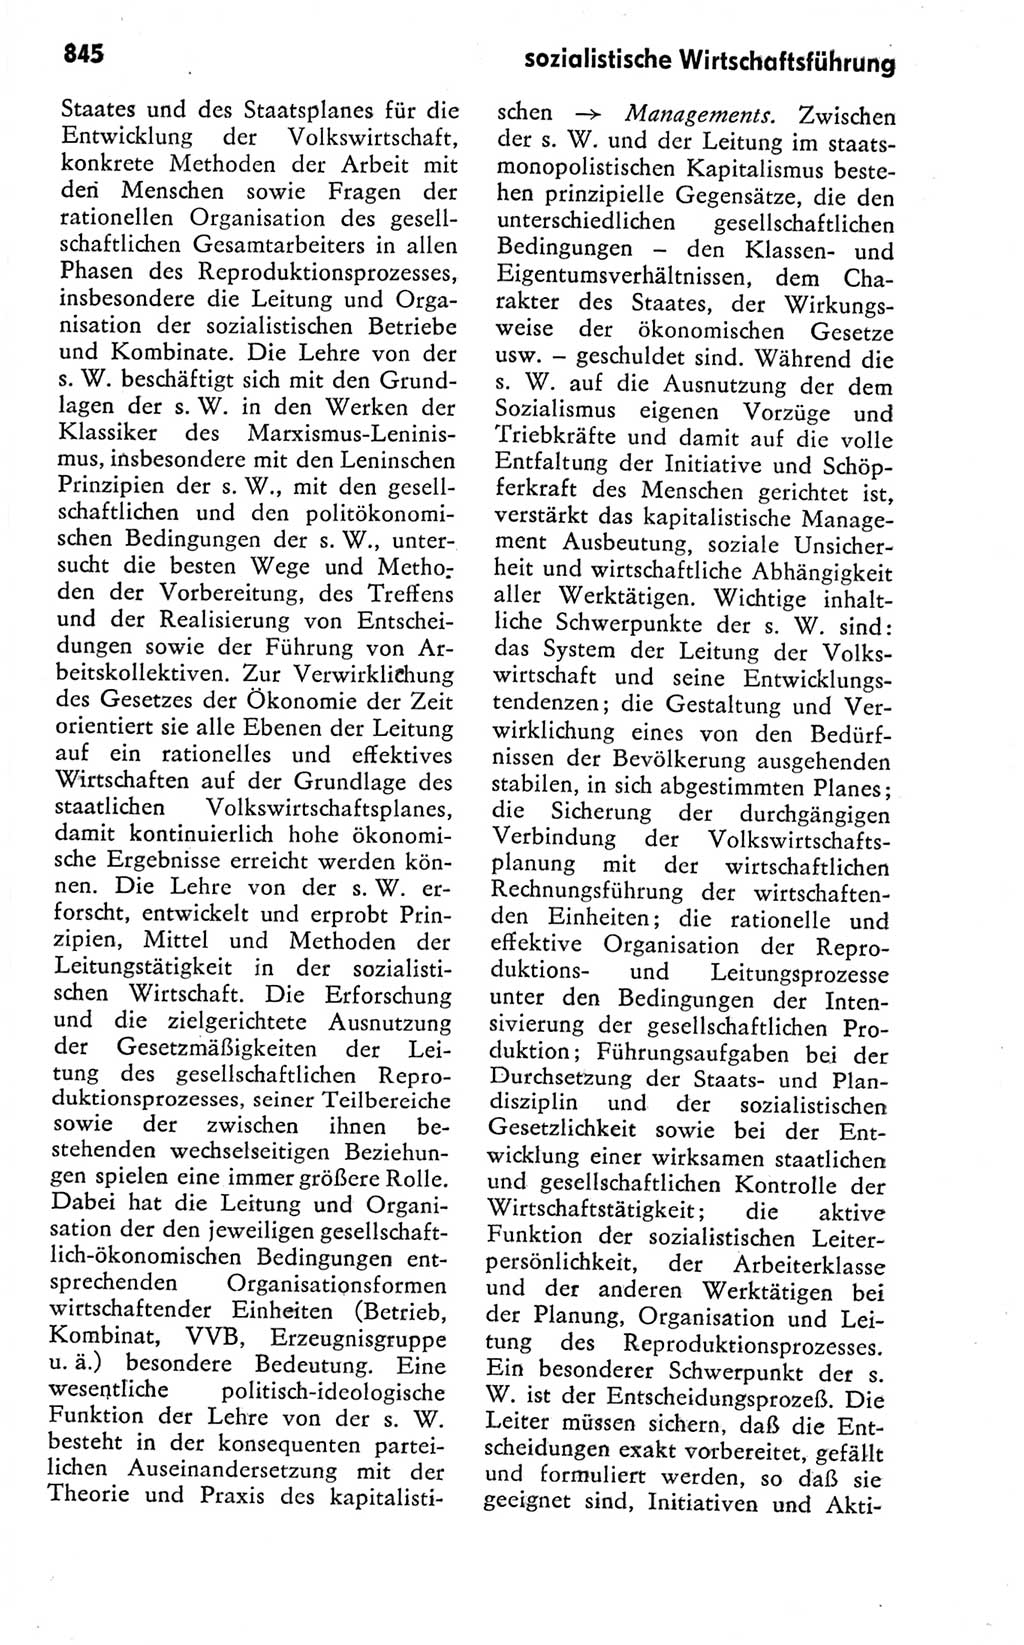 Kleines politisches Wörterbuch [Deutsche Demokratische Republik (DDR)] 1978, Seite 845 (Kl. pol. Wb. DDR 1978, S. 845)